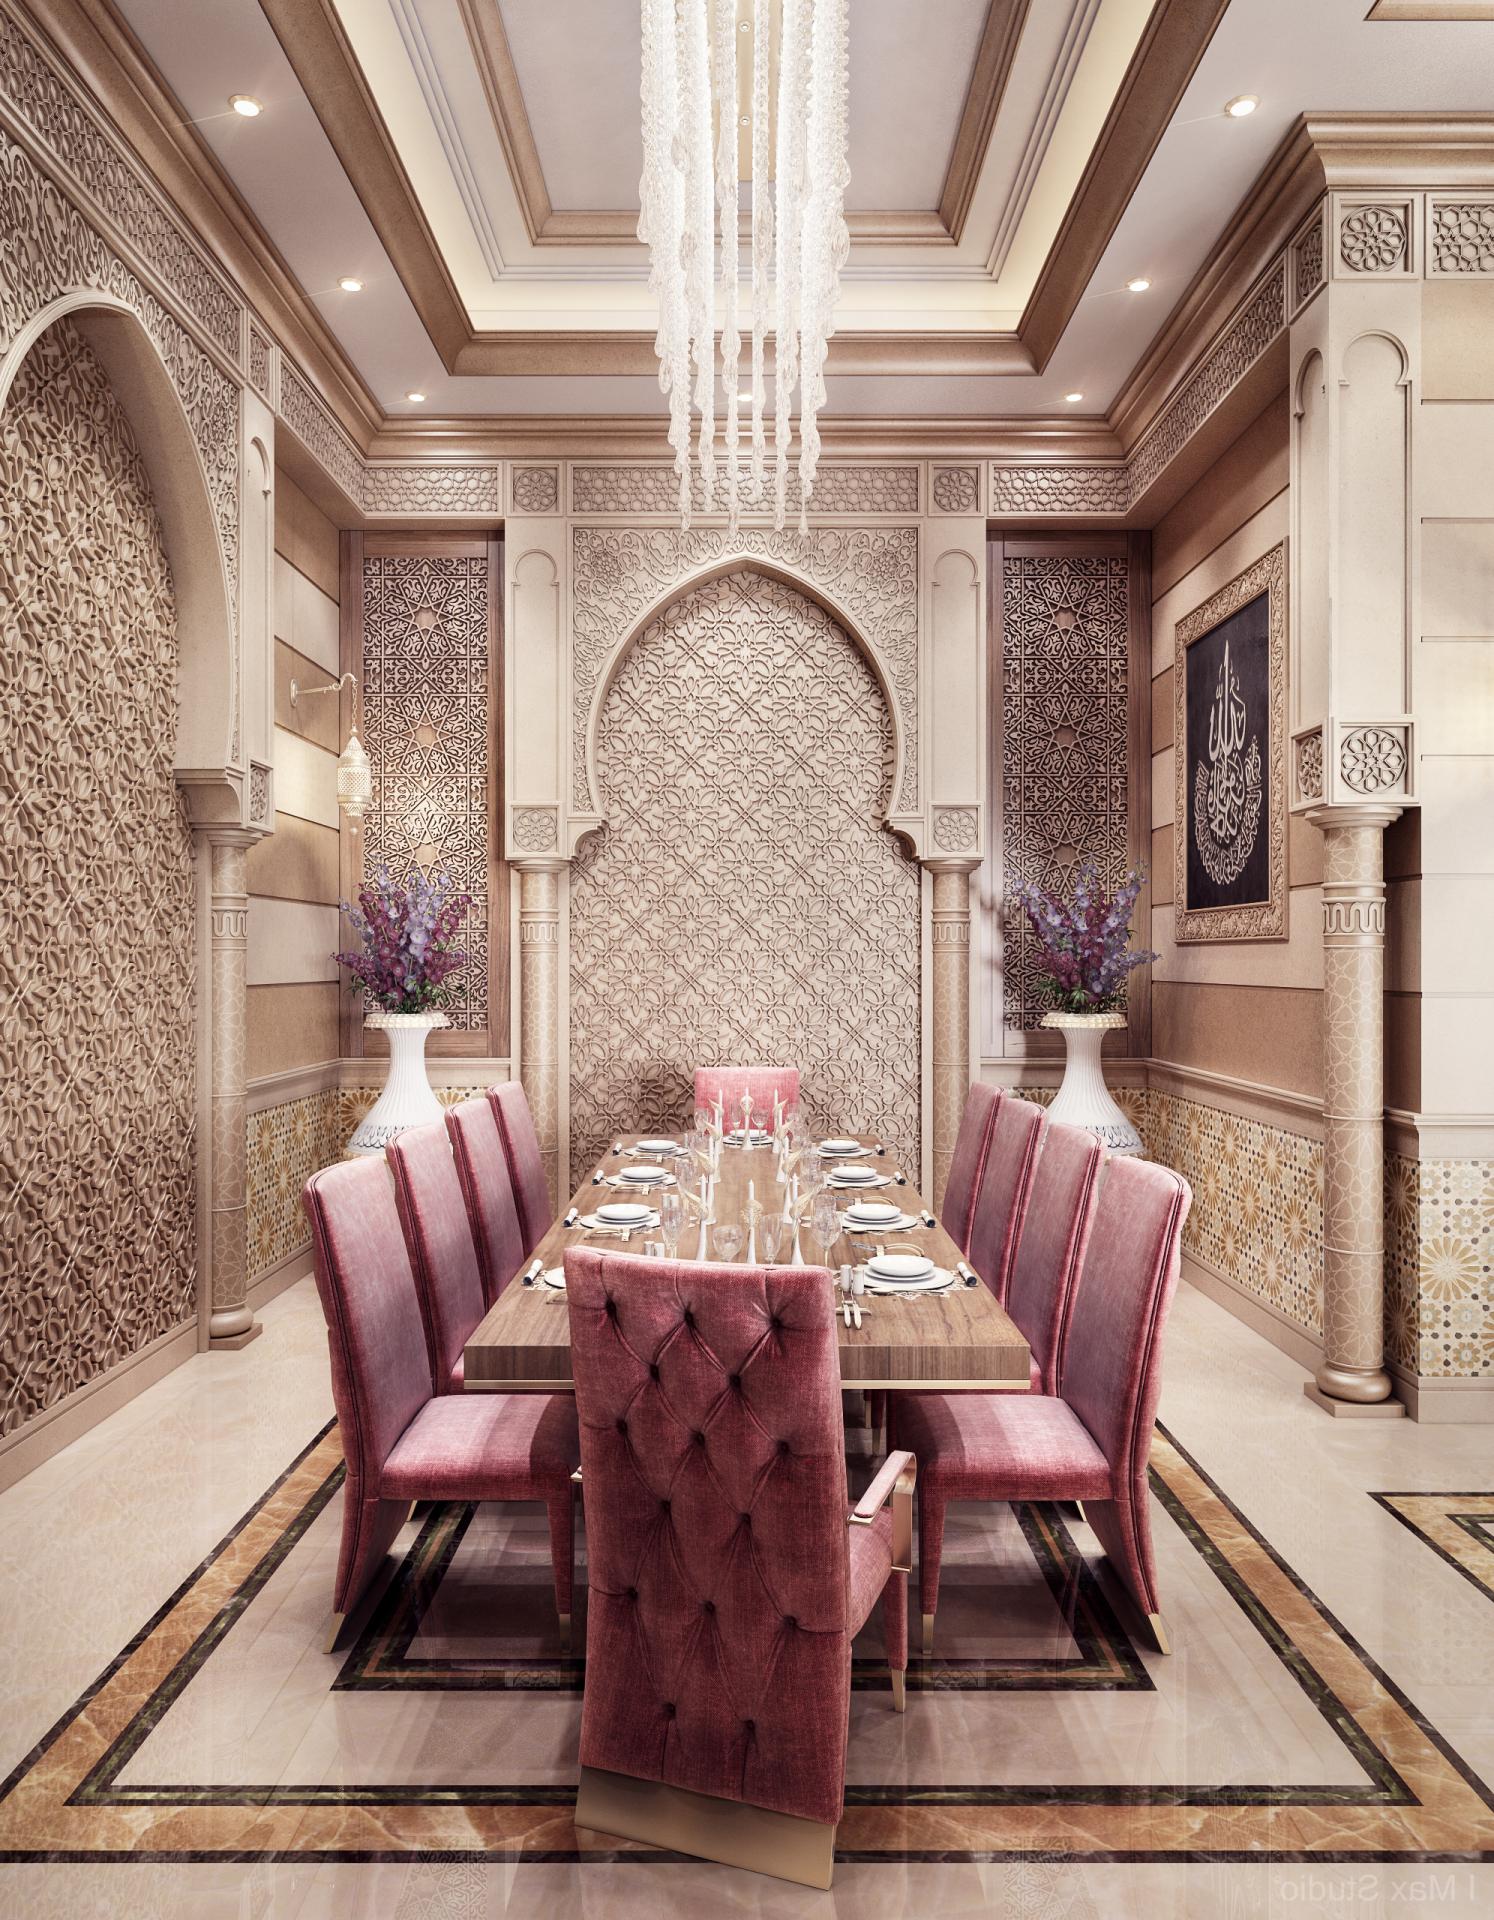 Арабский дизайн интерьера > 50 фото-идей с арабским стилем в интерьерах комнат